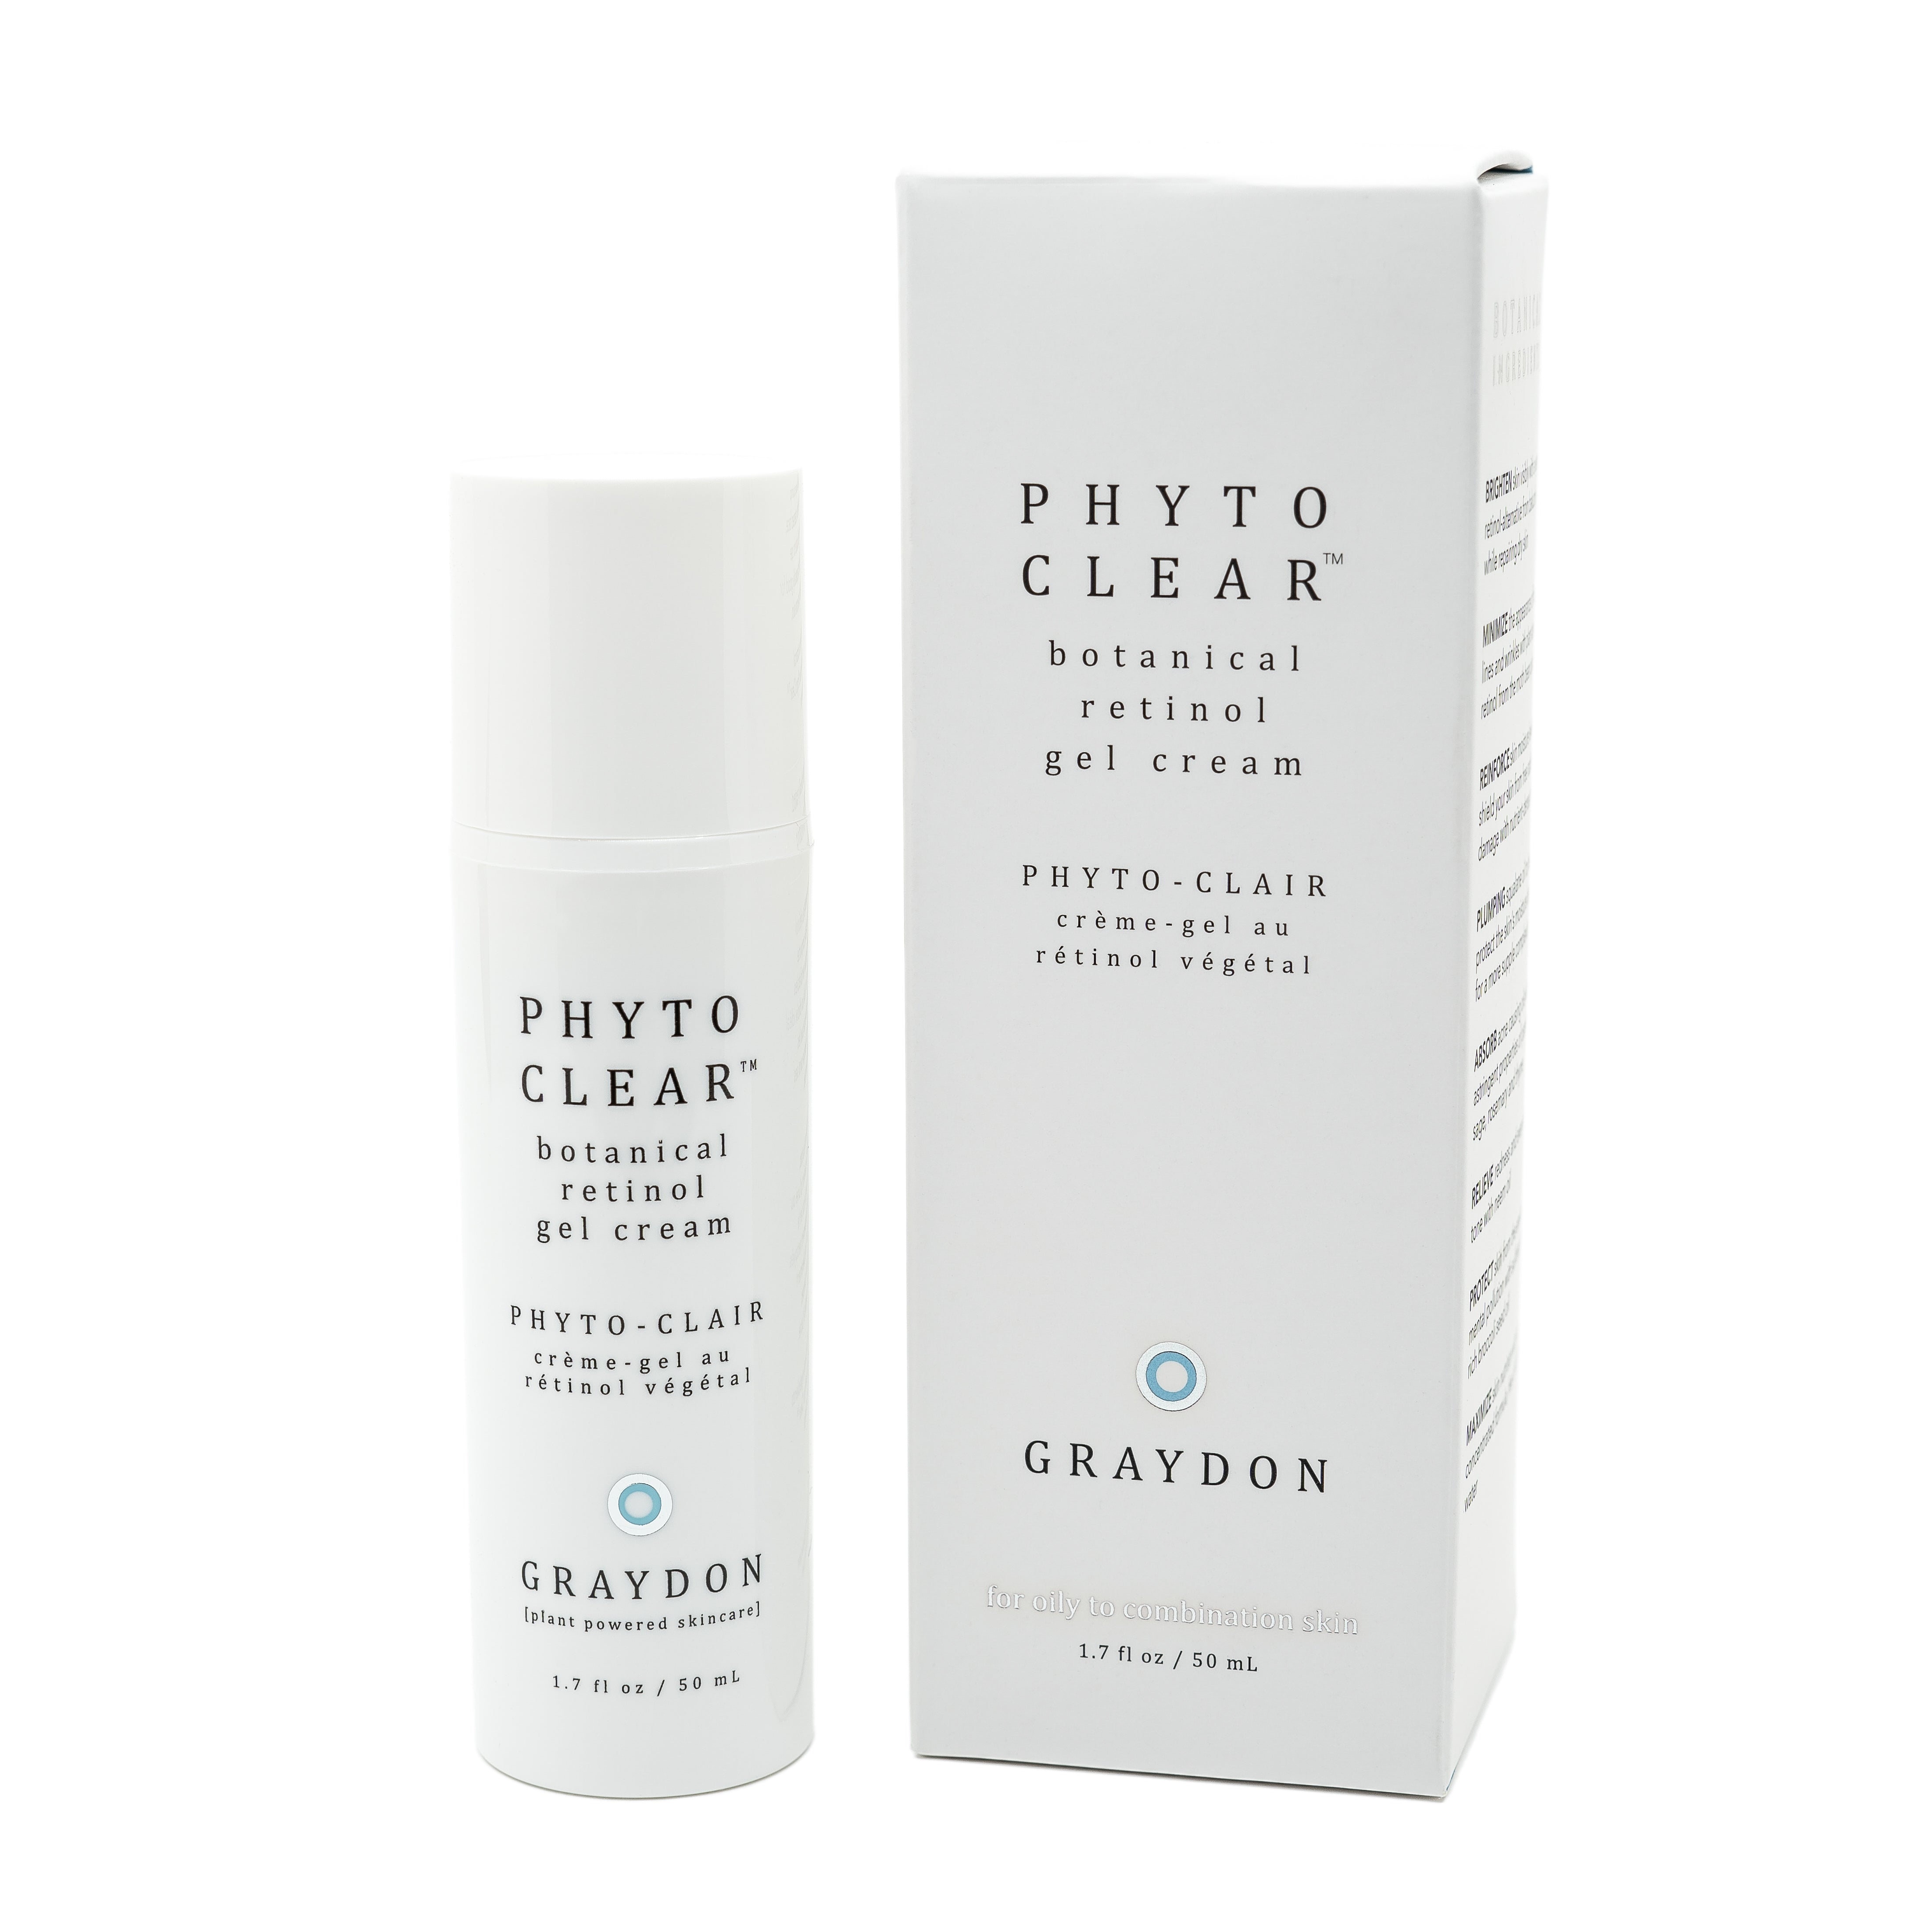 Phyto Clear - Botanical Retinol Gel Cream